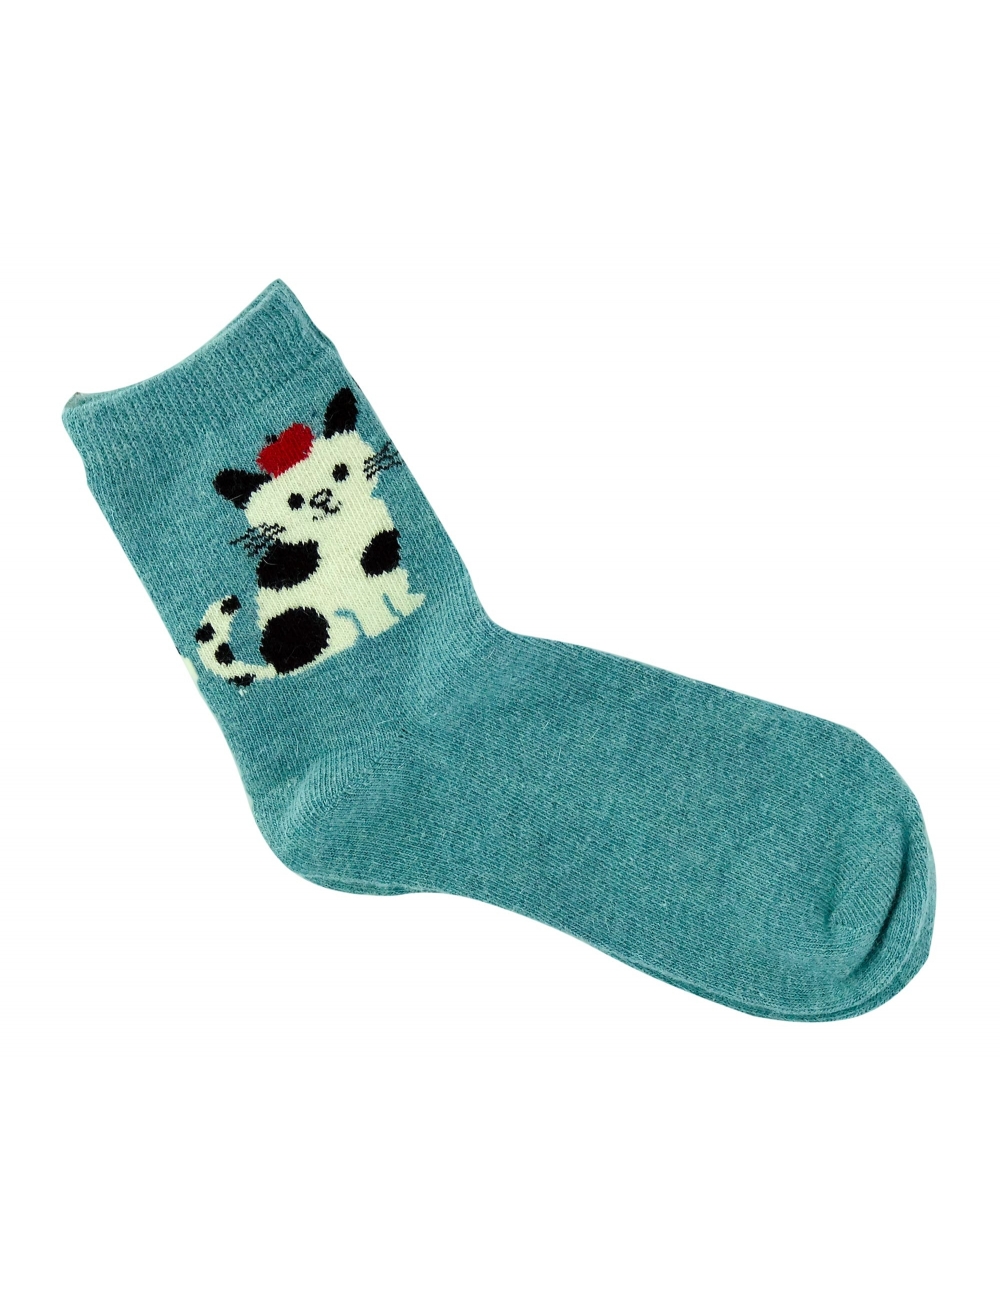 Теплые носки для девочек ( подростков ) Midini котик голубые